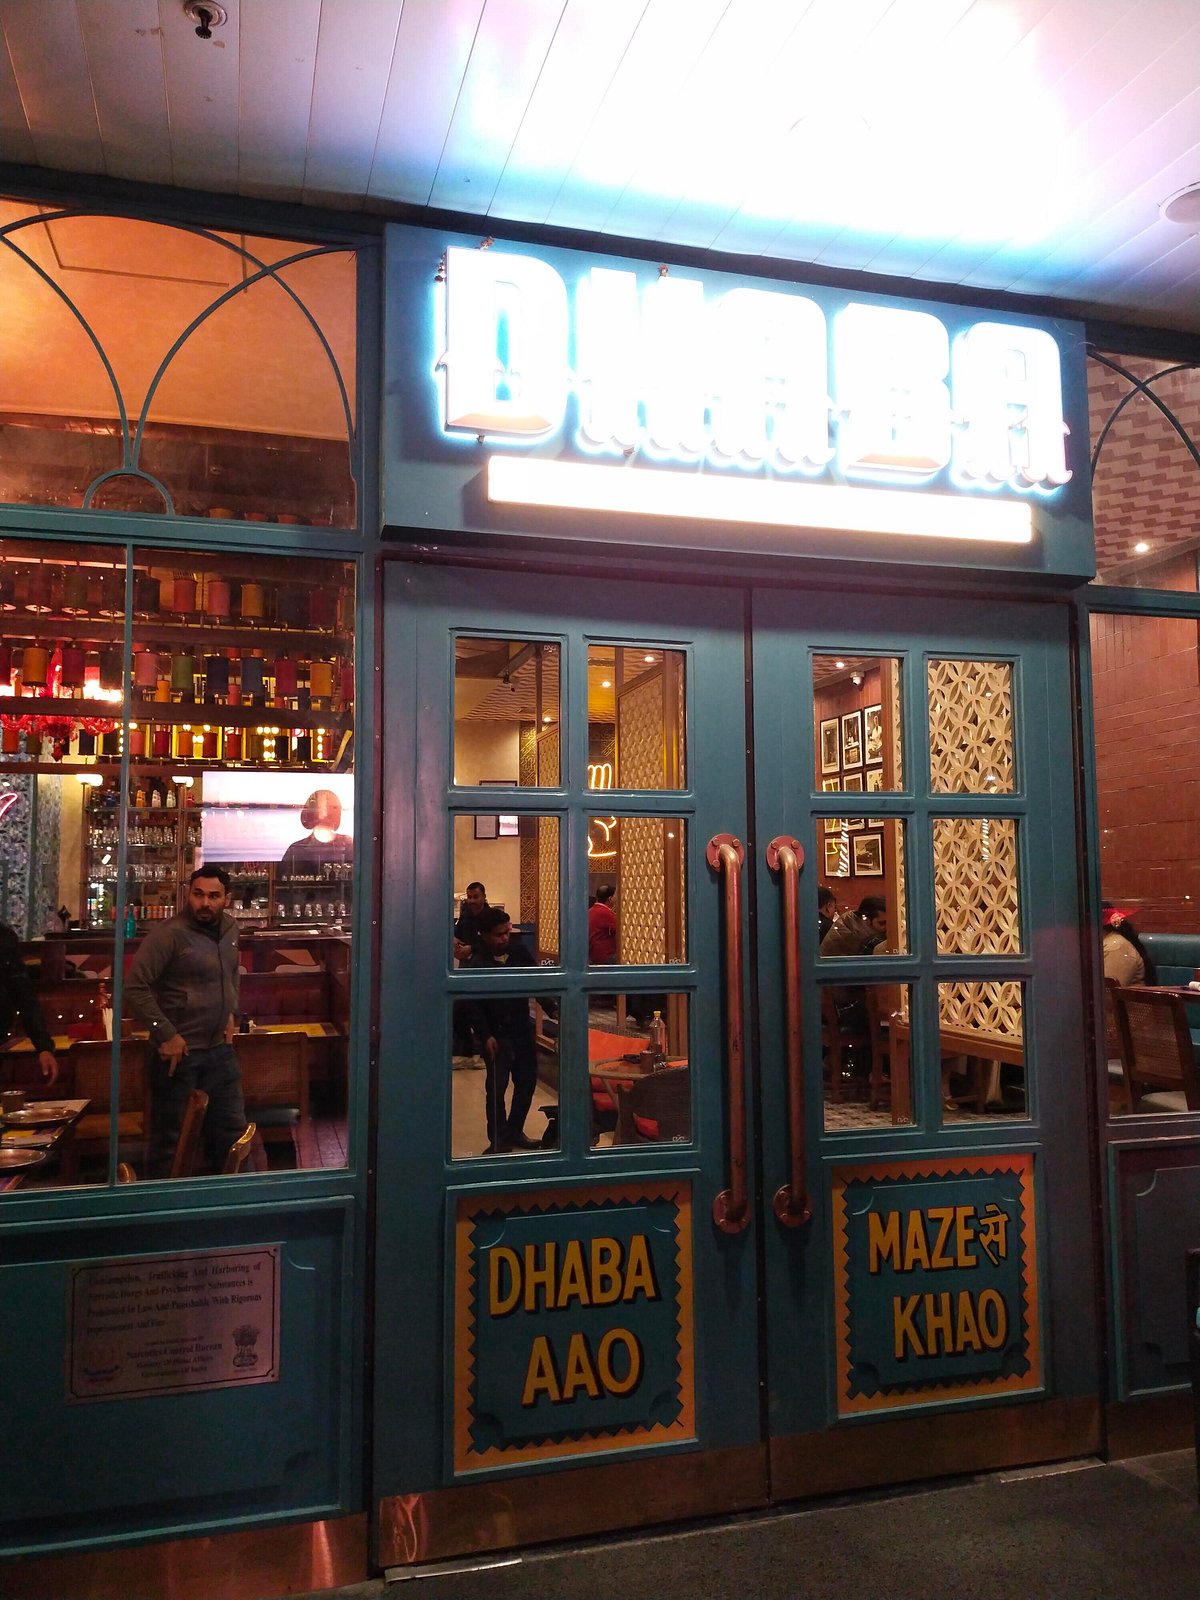 CAFE HIGH OCTANE, Noida - Restaurant Reviews, Phone Number & Photos -  Tripadvisor